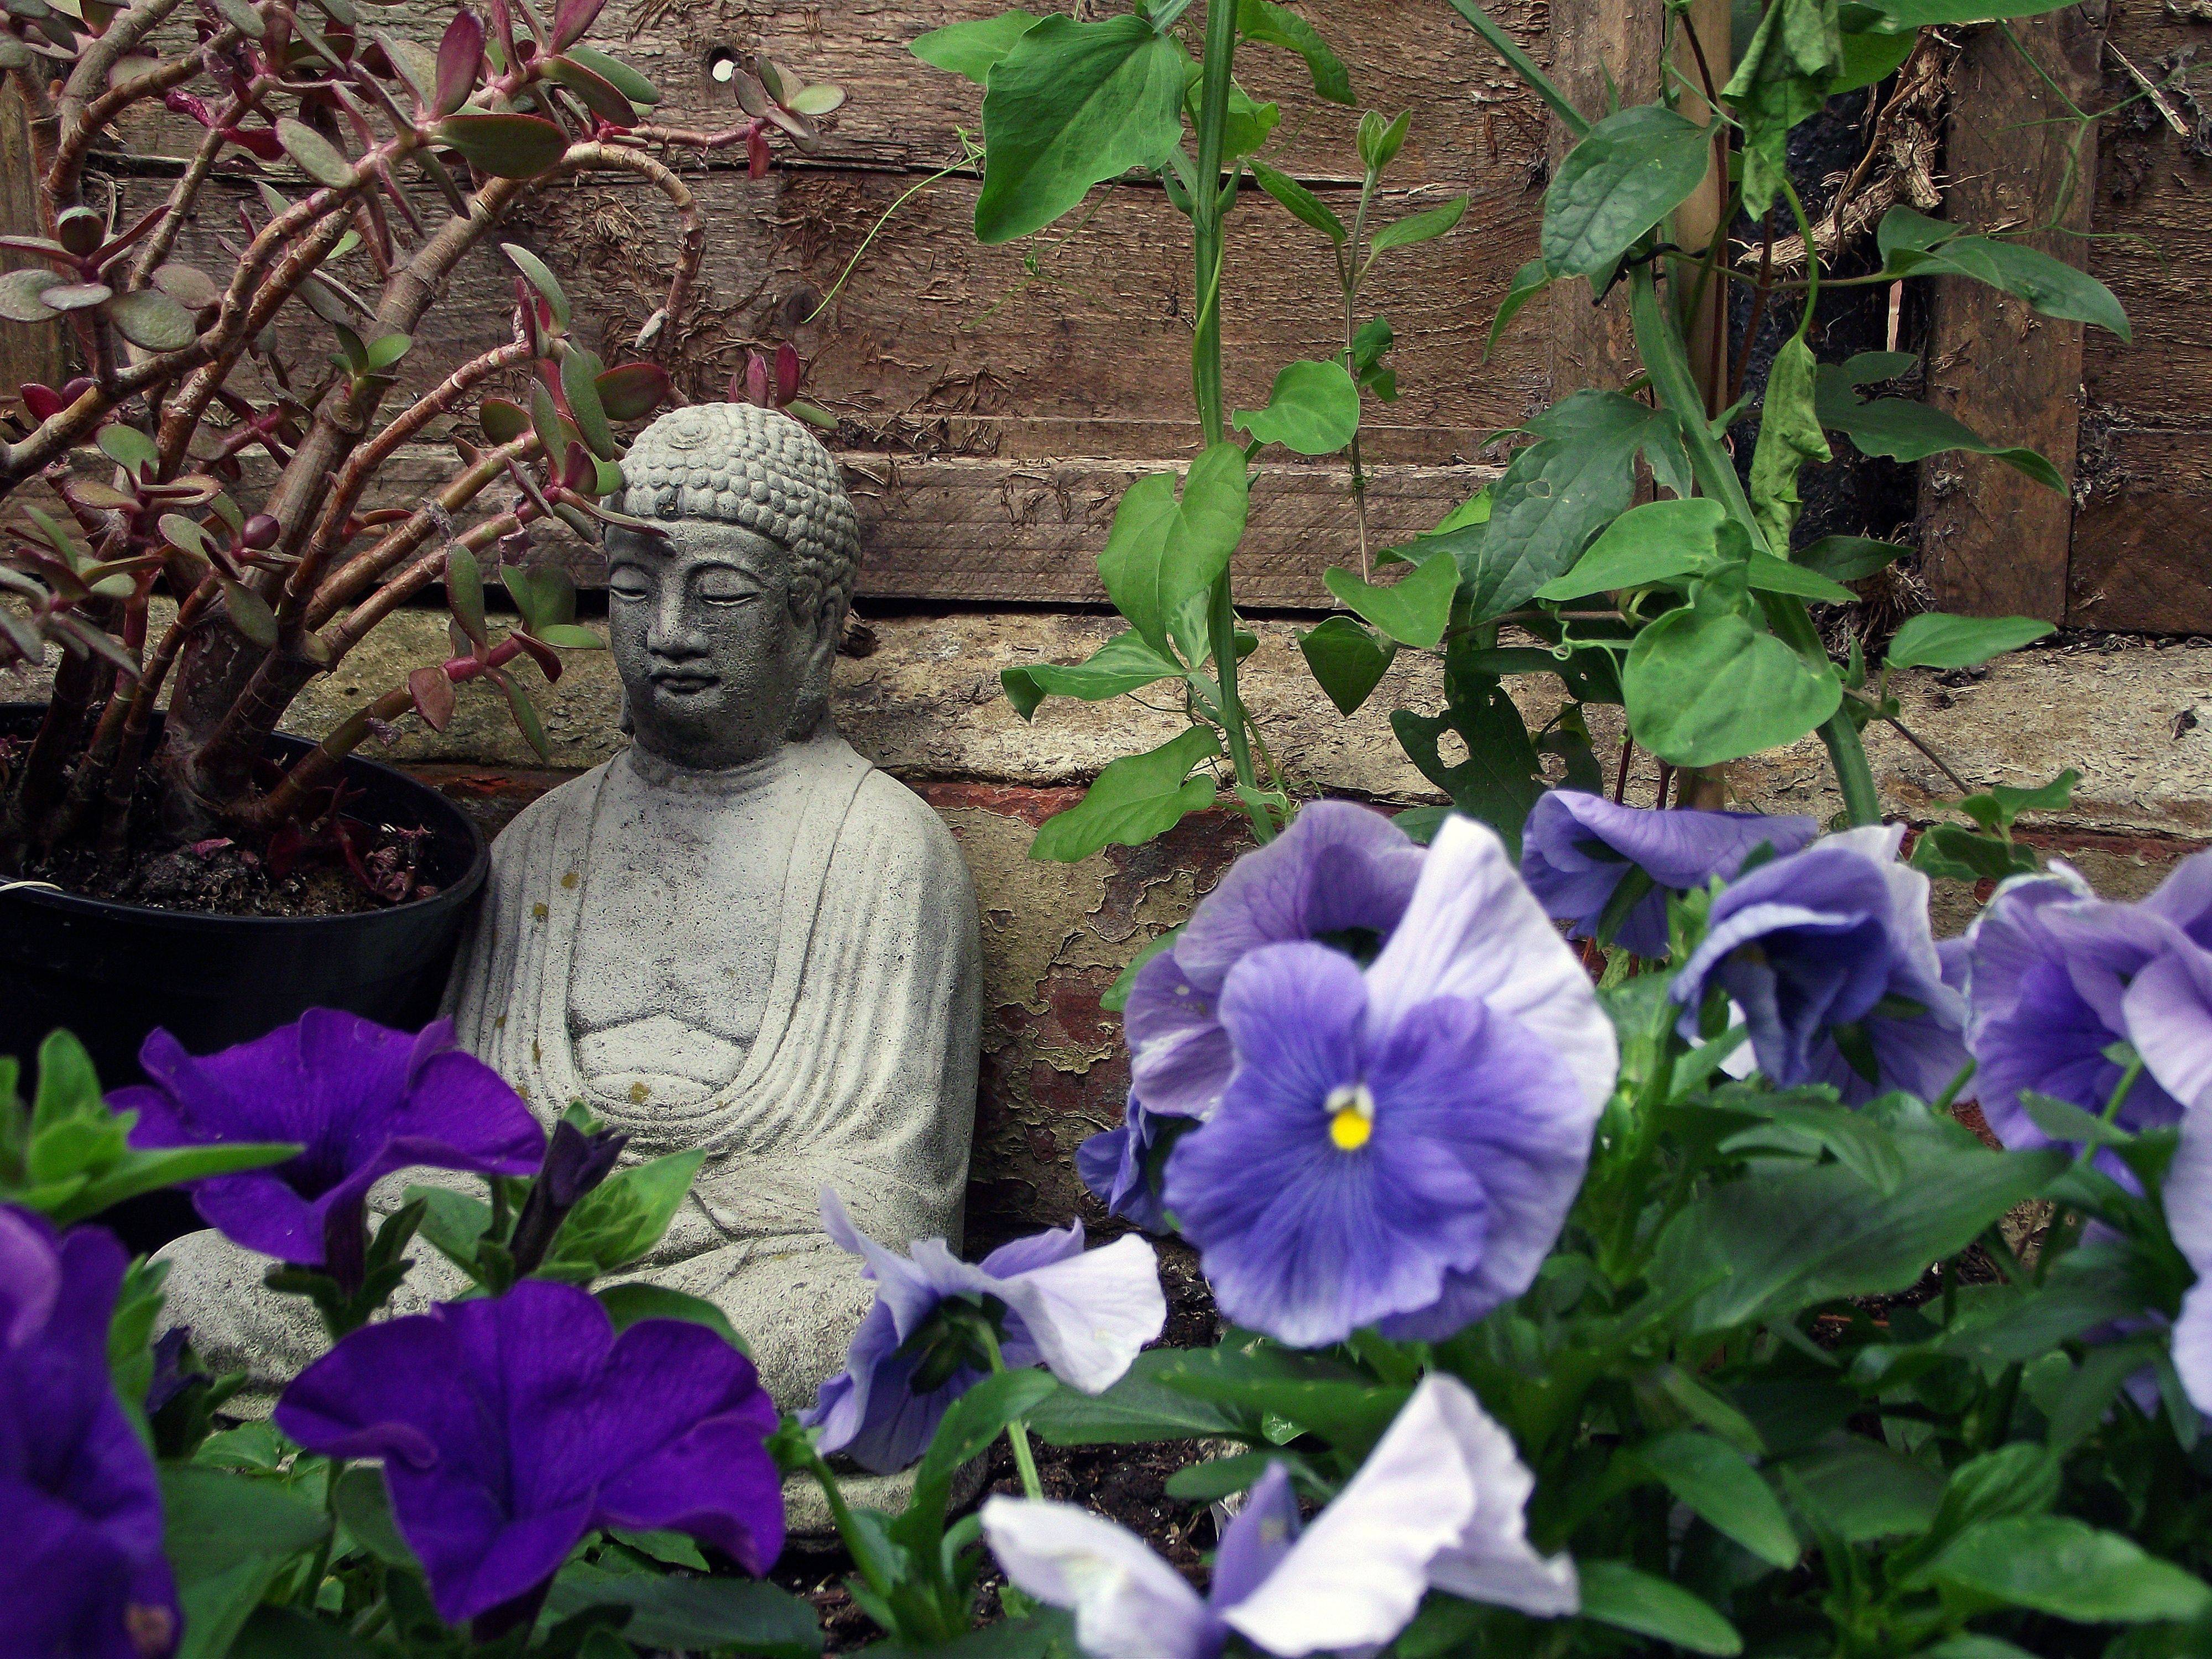 Awesome Buddha Garden Design Ideas